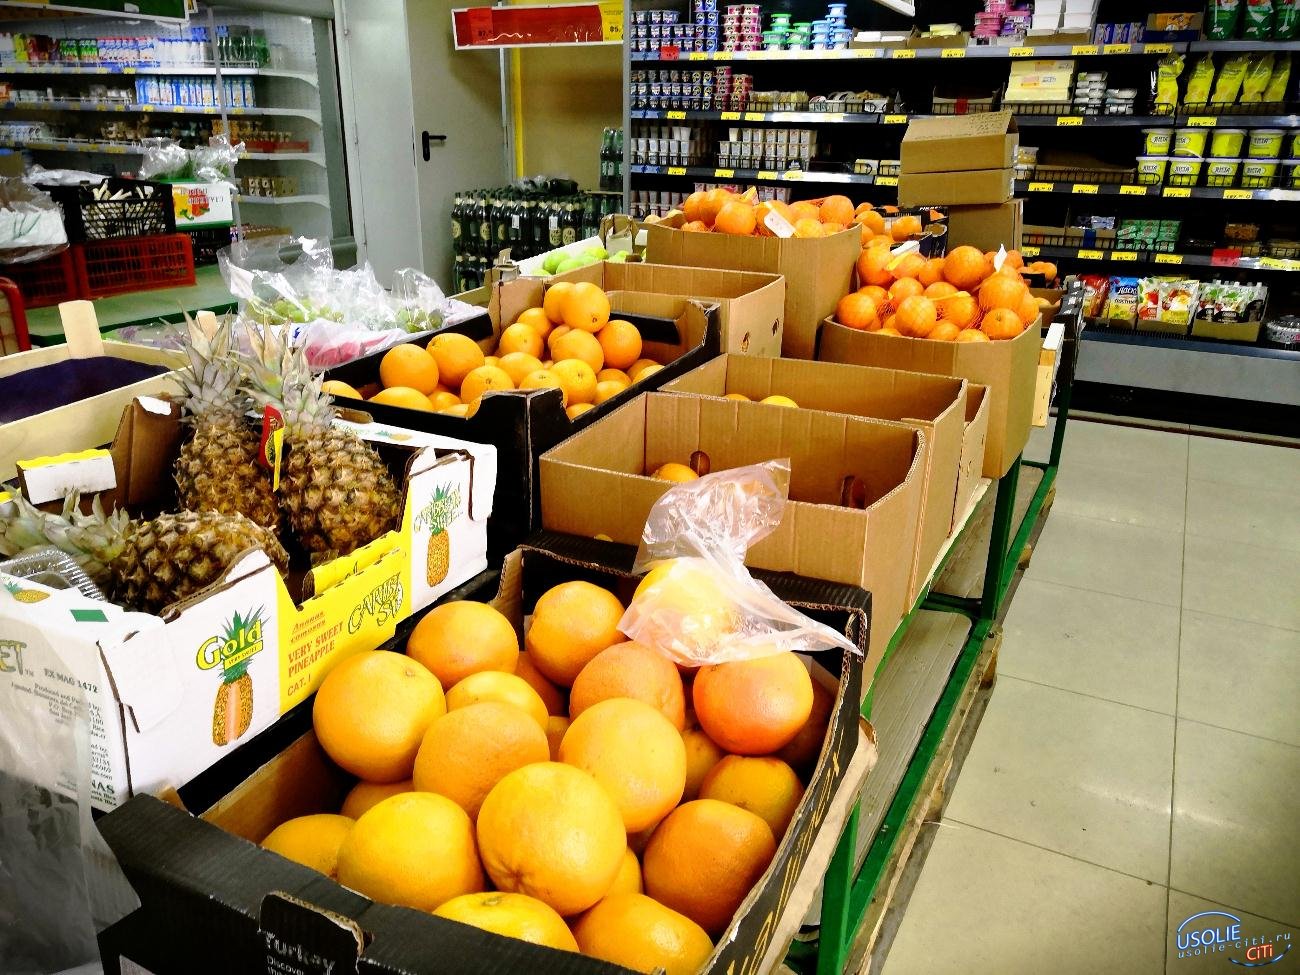 Существует определённый риск заражения при покупке фруктов в усольских магазинах